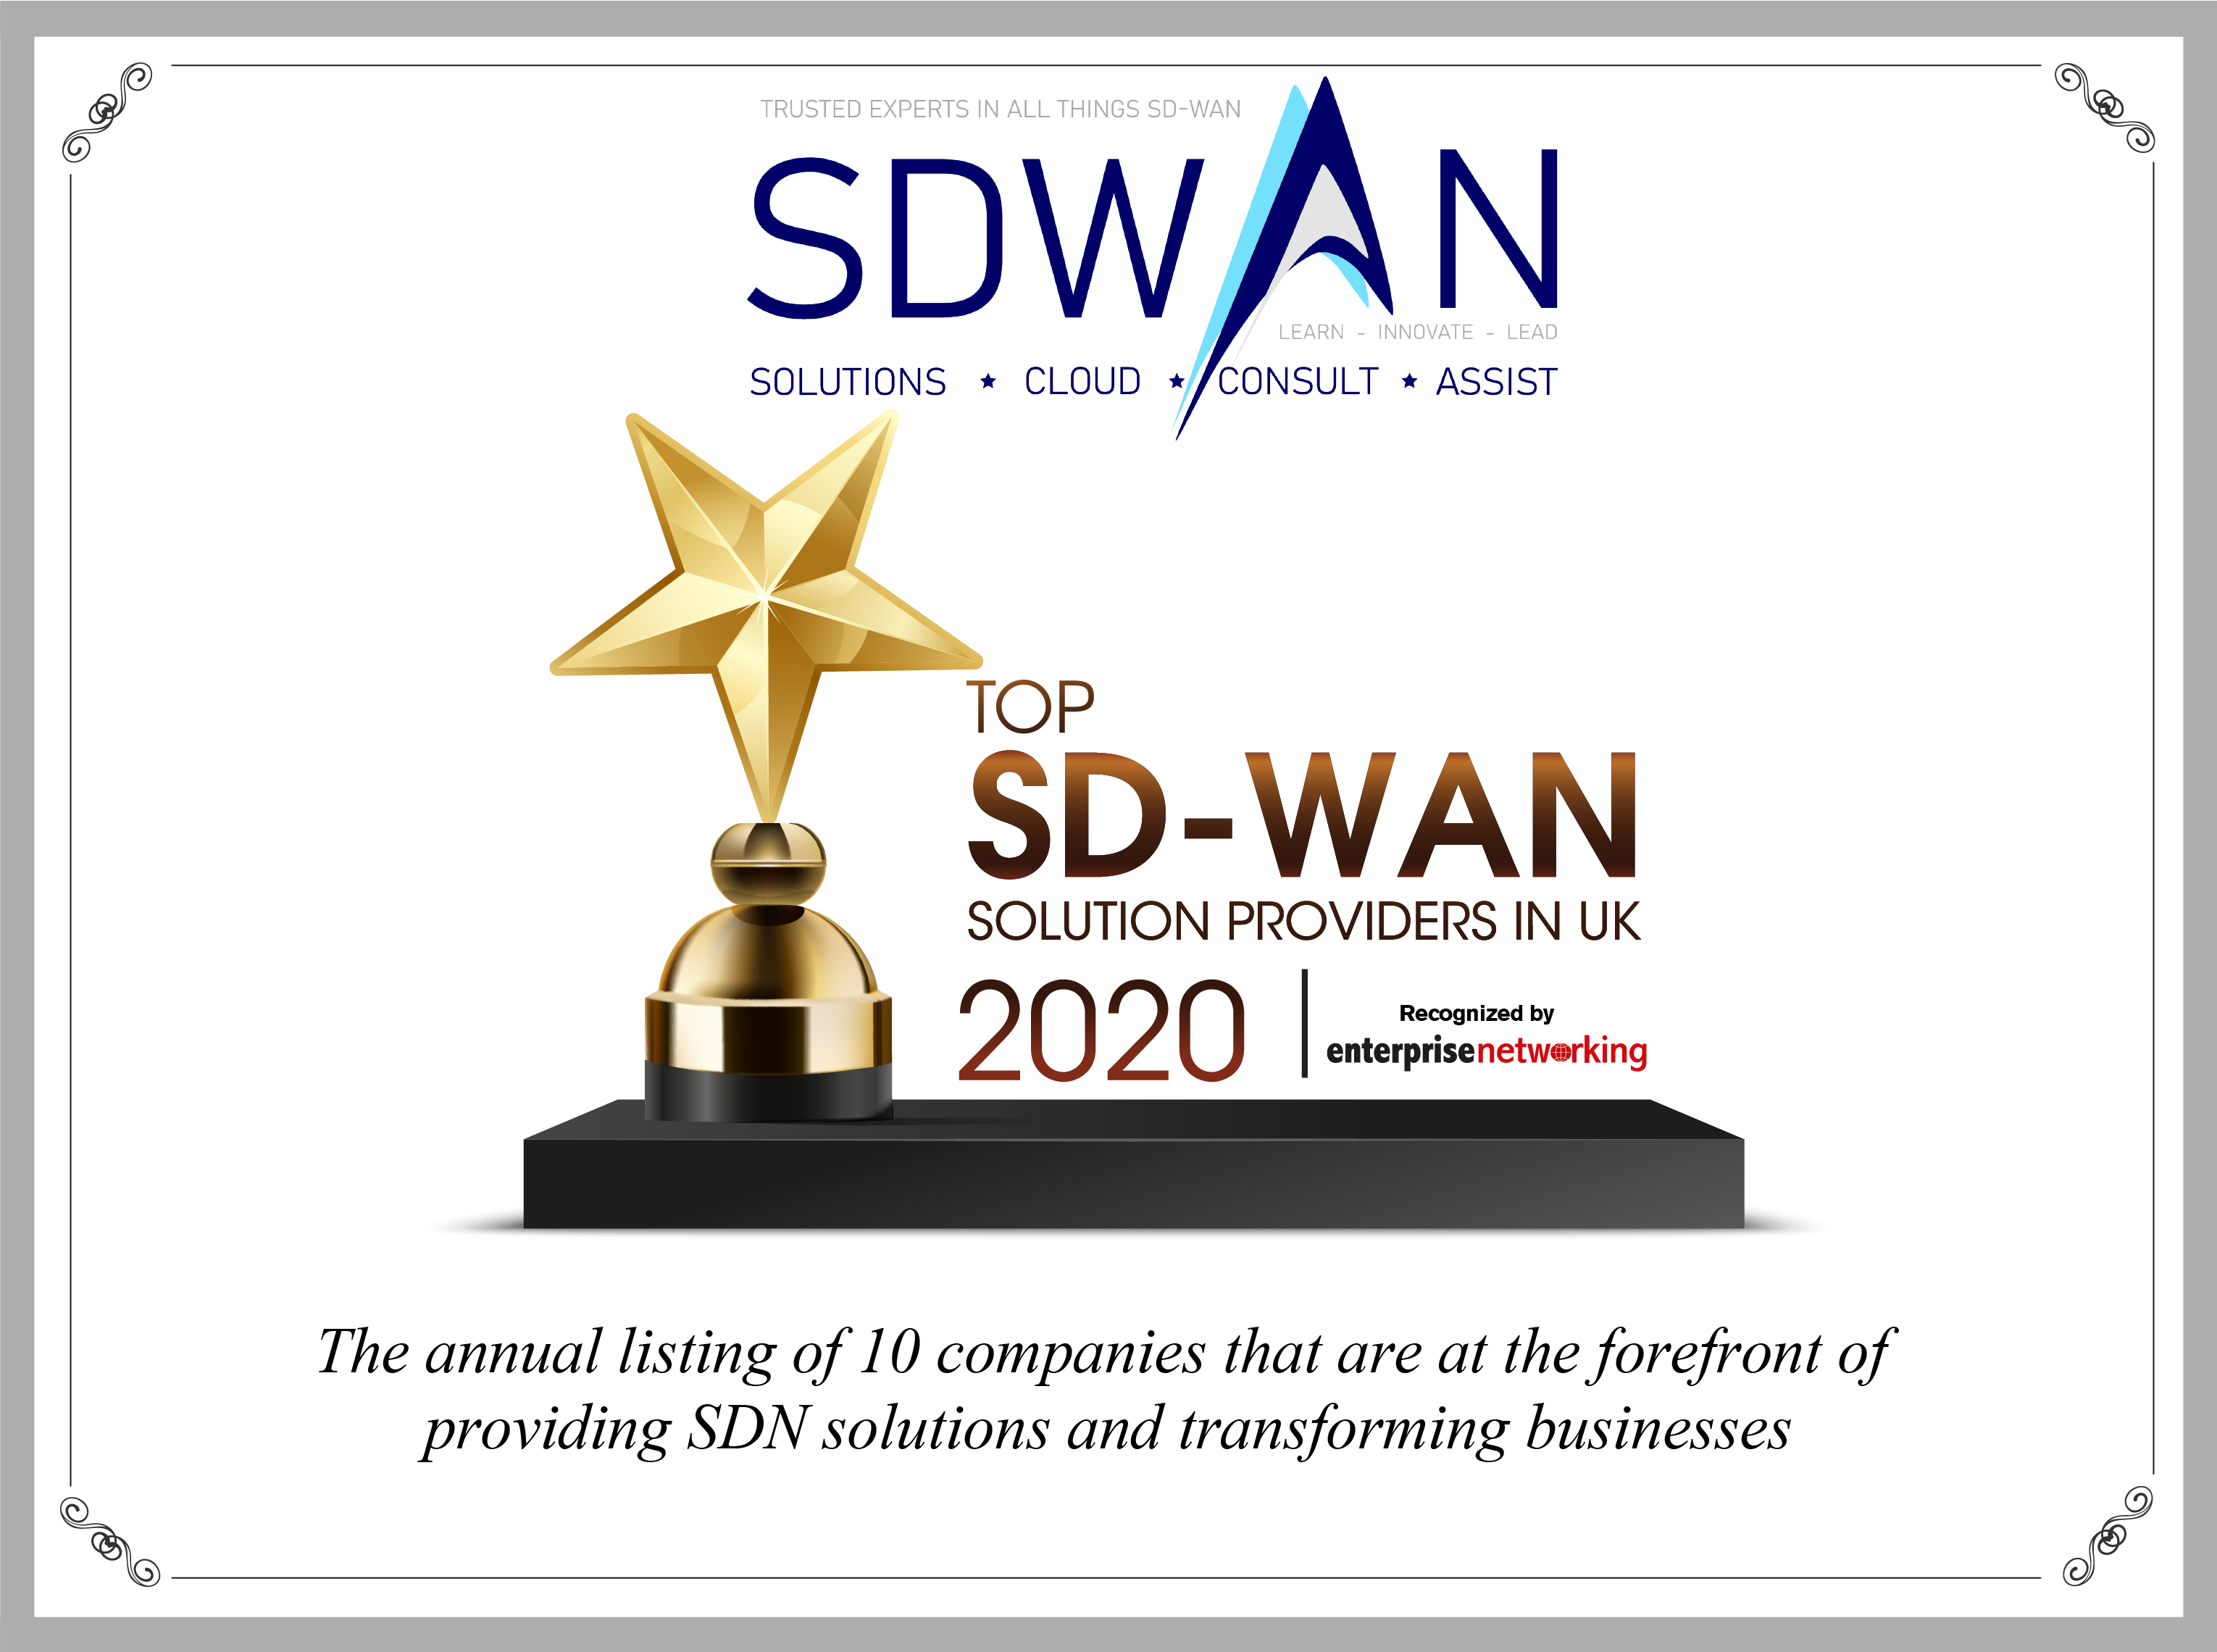 SDWAN SOLUTIONS SaSe-Lösungen